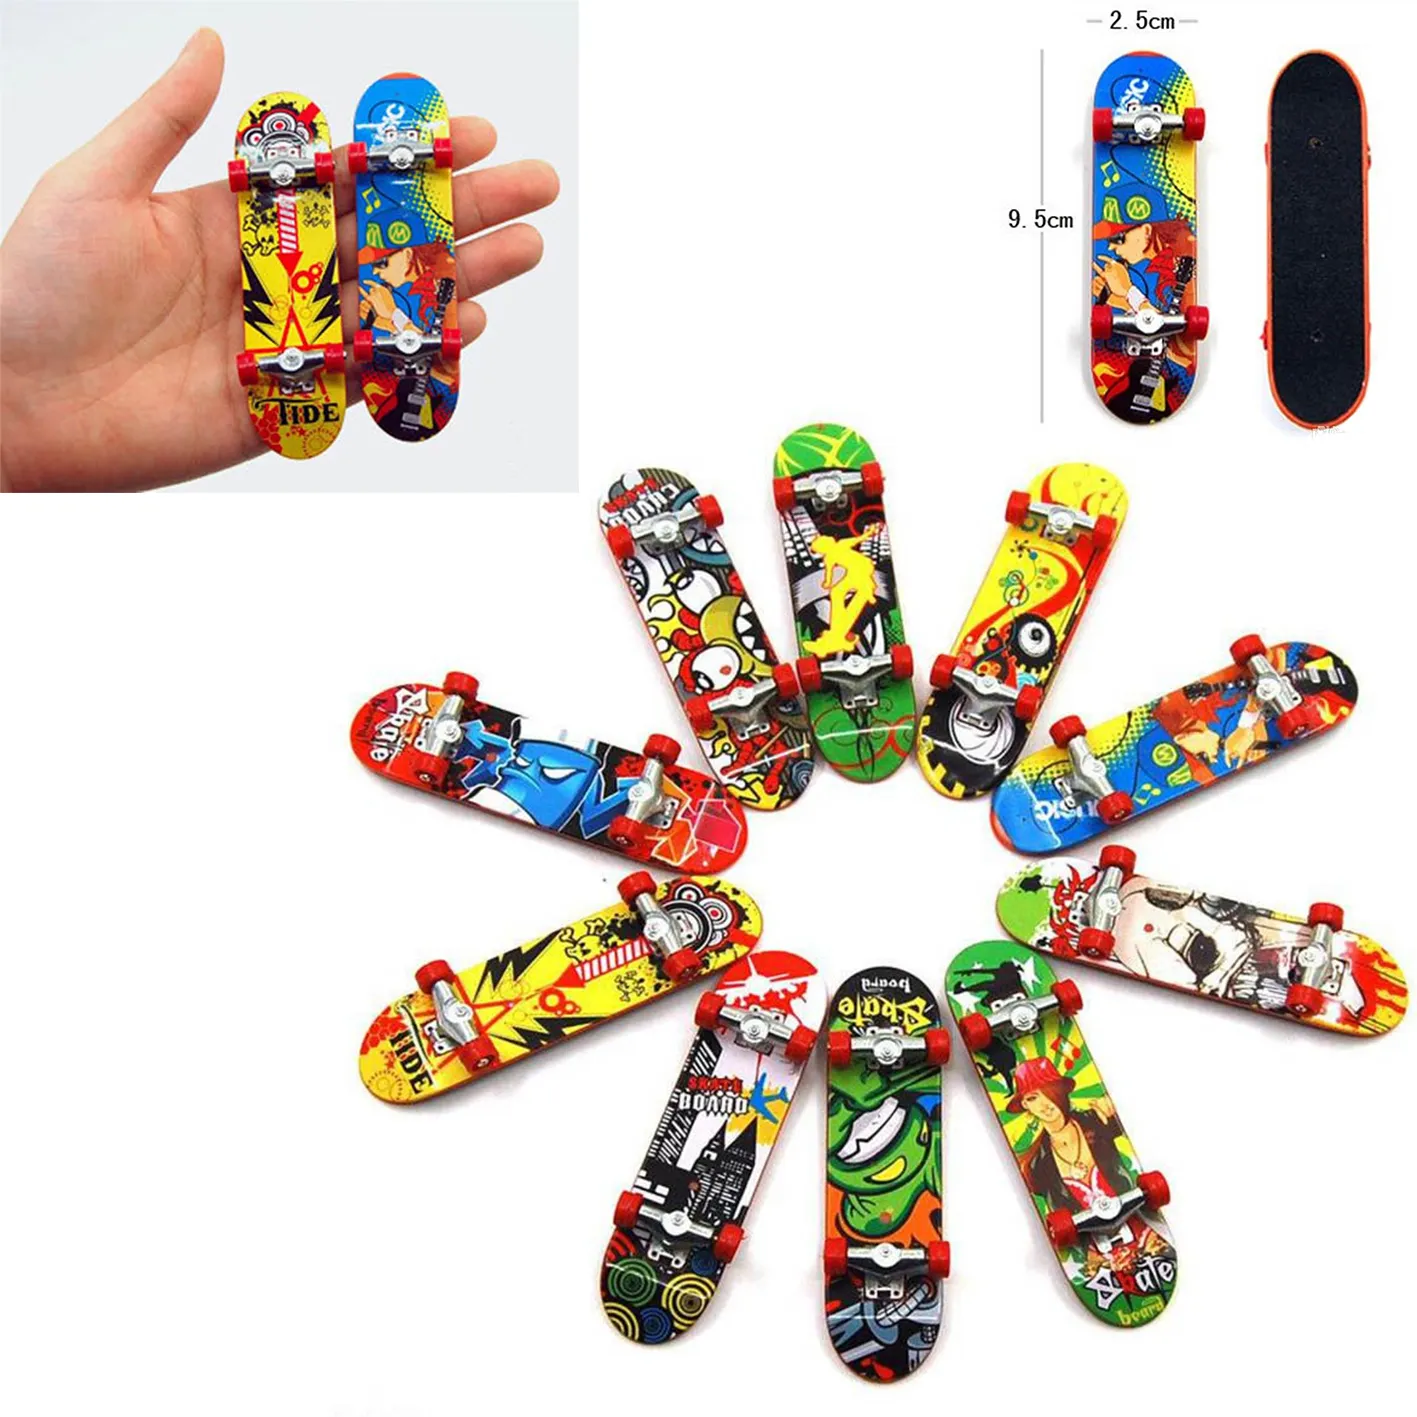 Mini Finger boards Skate truck Print professional Plastic Stand FingerBoard Skateboard Finger Skateboard for Kid Toy Children Gift